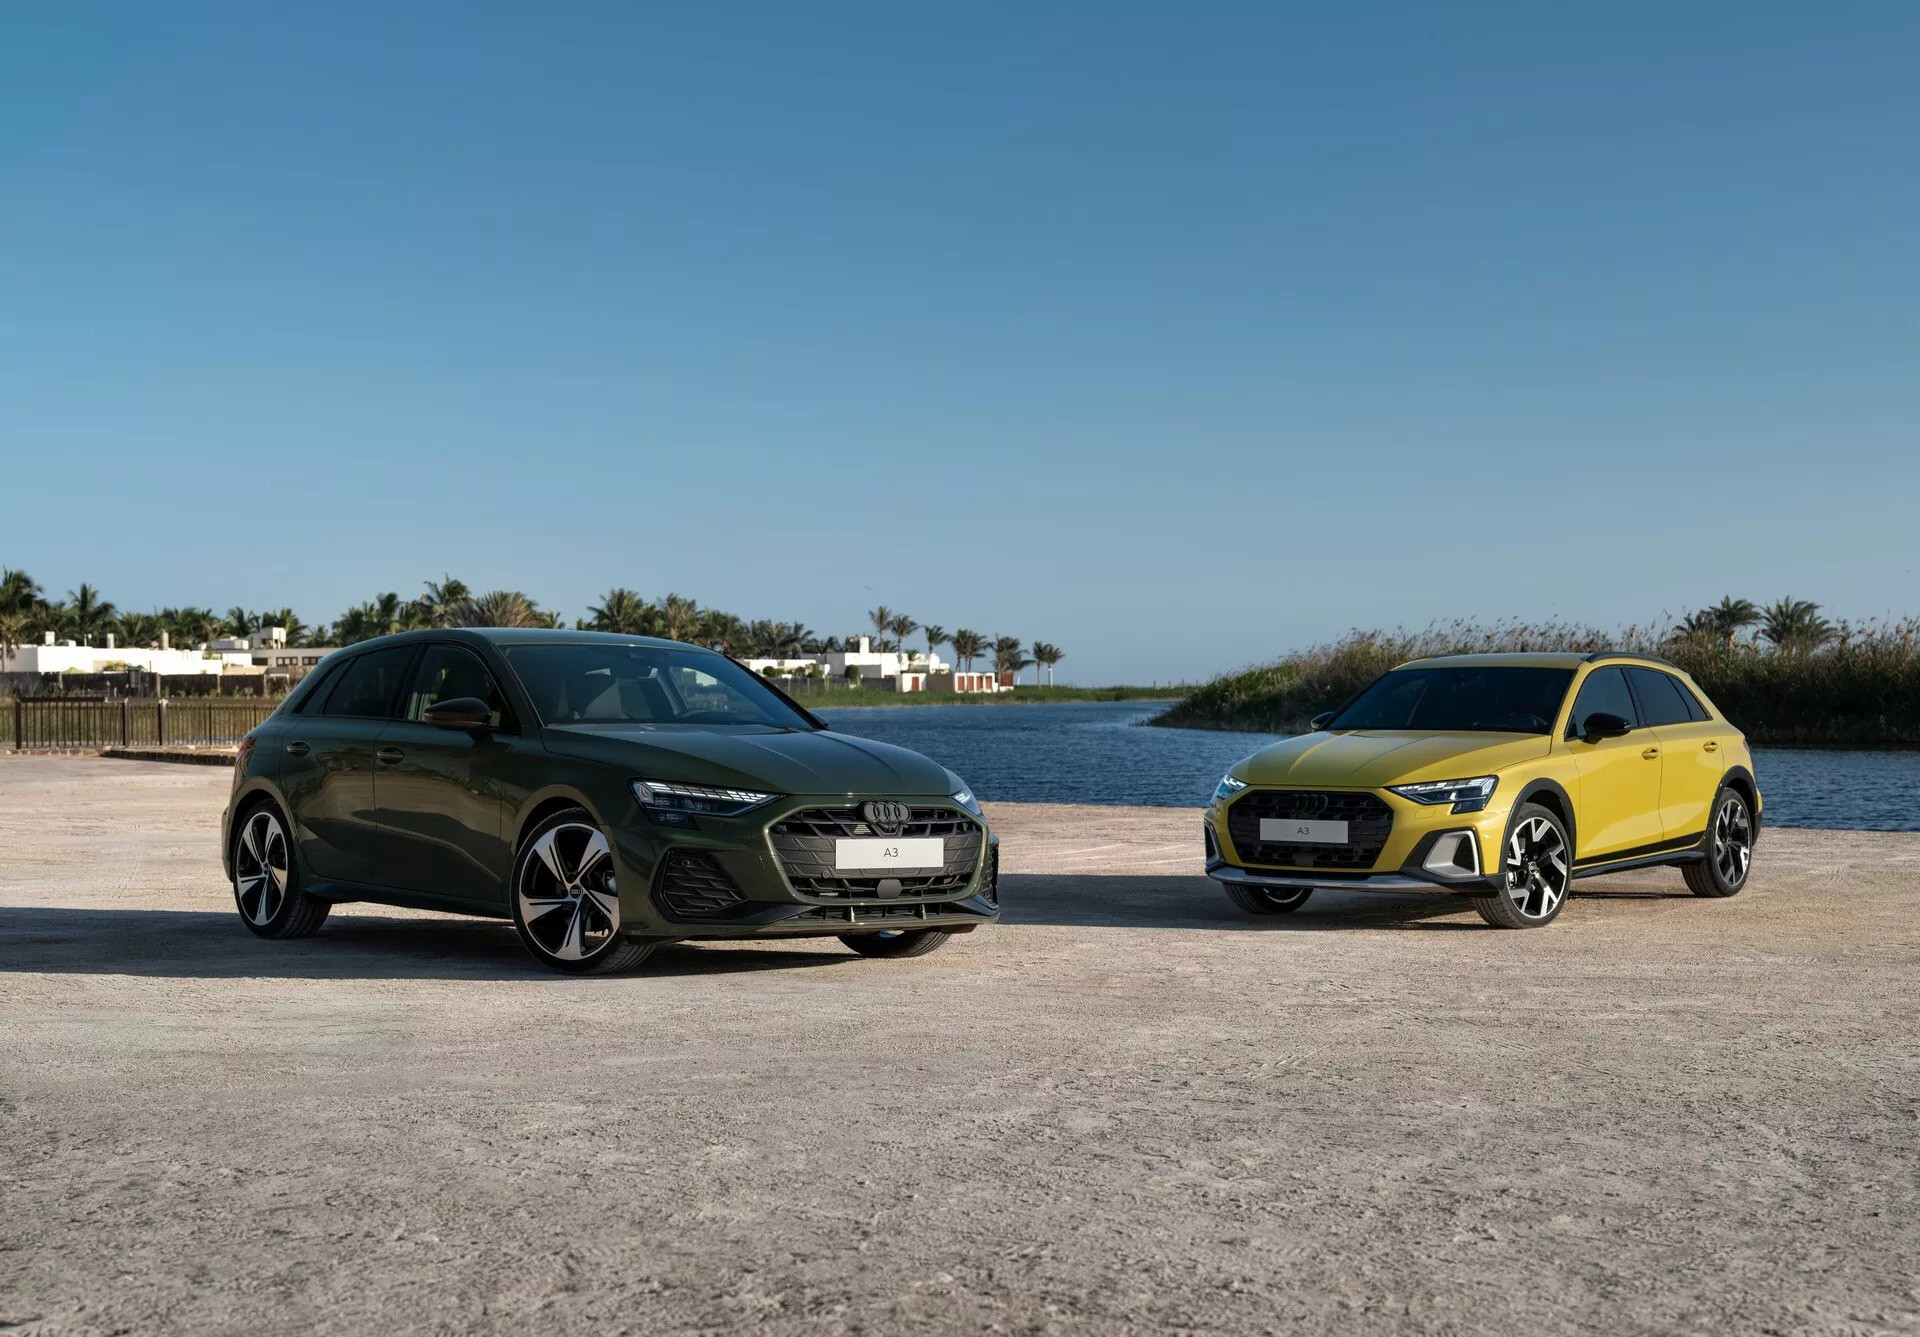 Audi A3 là dòng tên đang giúp Audi đua doanh số tại nhiều thị trường. Tuy nhiên xe lại khá ít được chăm chút khi 4 năm sau ngày lên đời mới được cập nhật giữa vòng đời - Ảnh: Audi